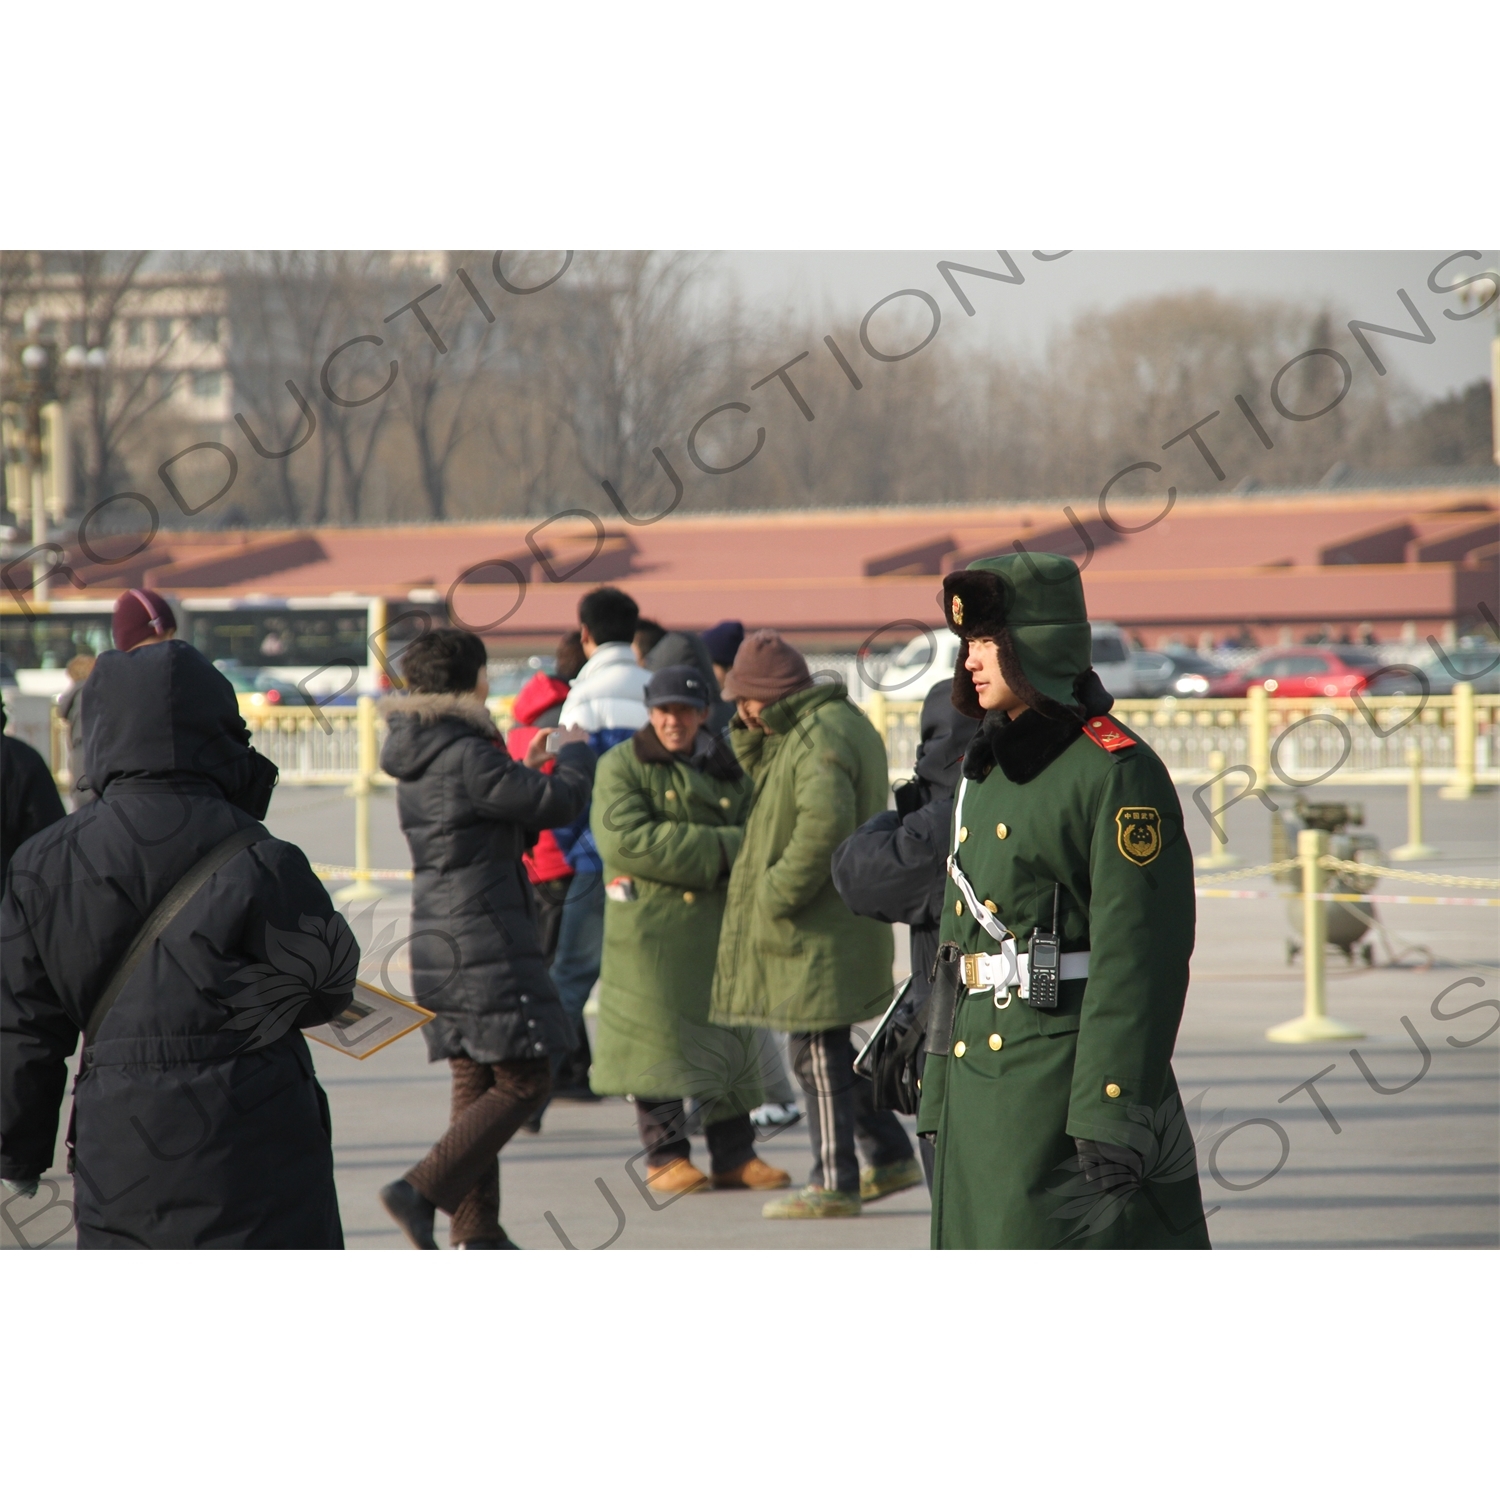 Soldier in Tiananmen Square in Beijing